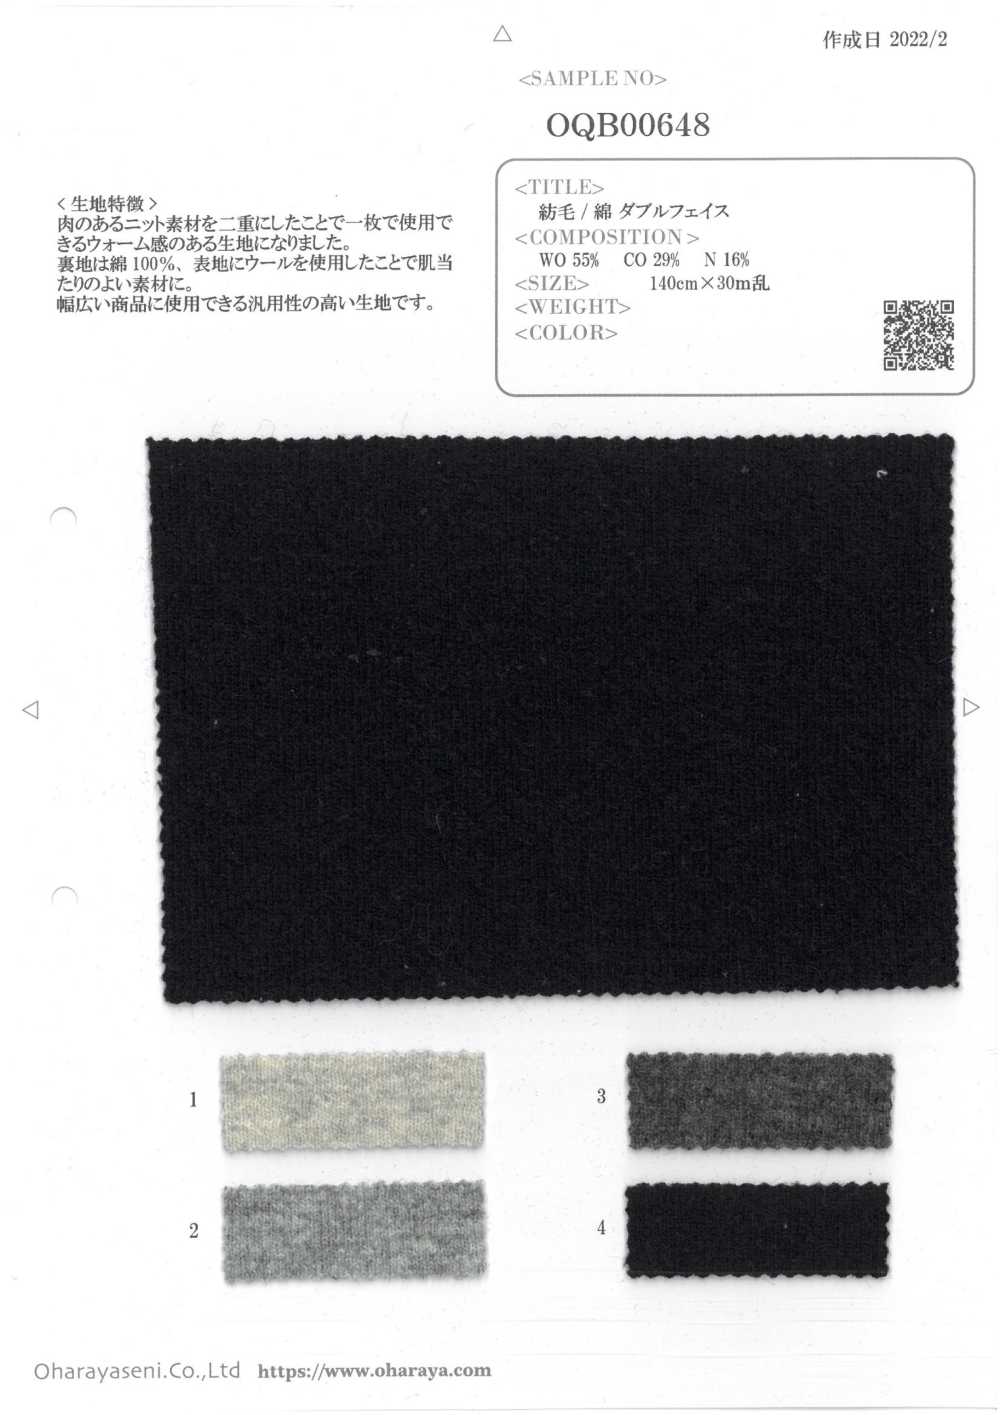 OQB00648 Dupla Face Lã/algodão[Têxtil / Tecido] Oharayaseni